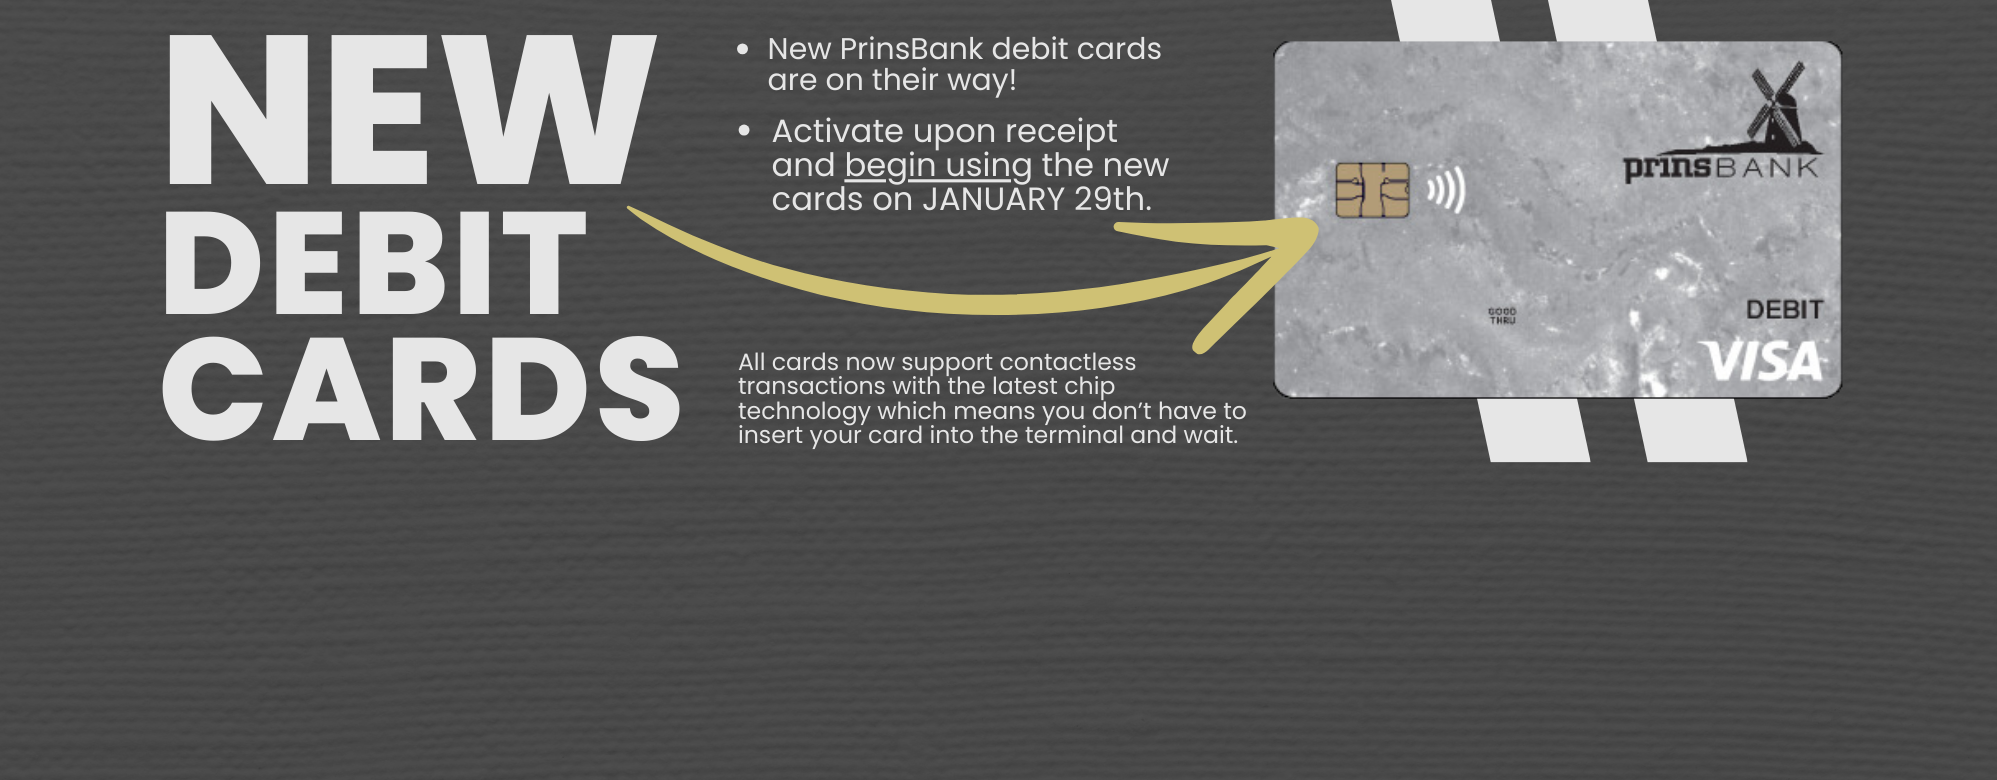 new debit cards coming soon